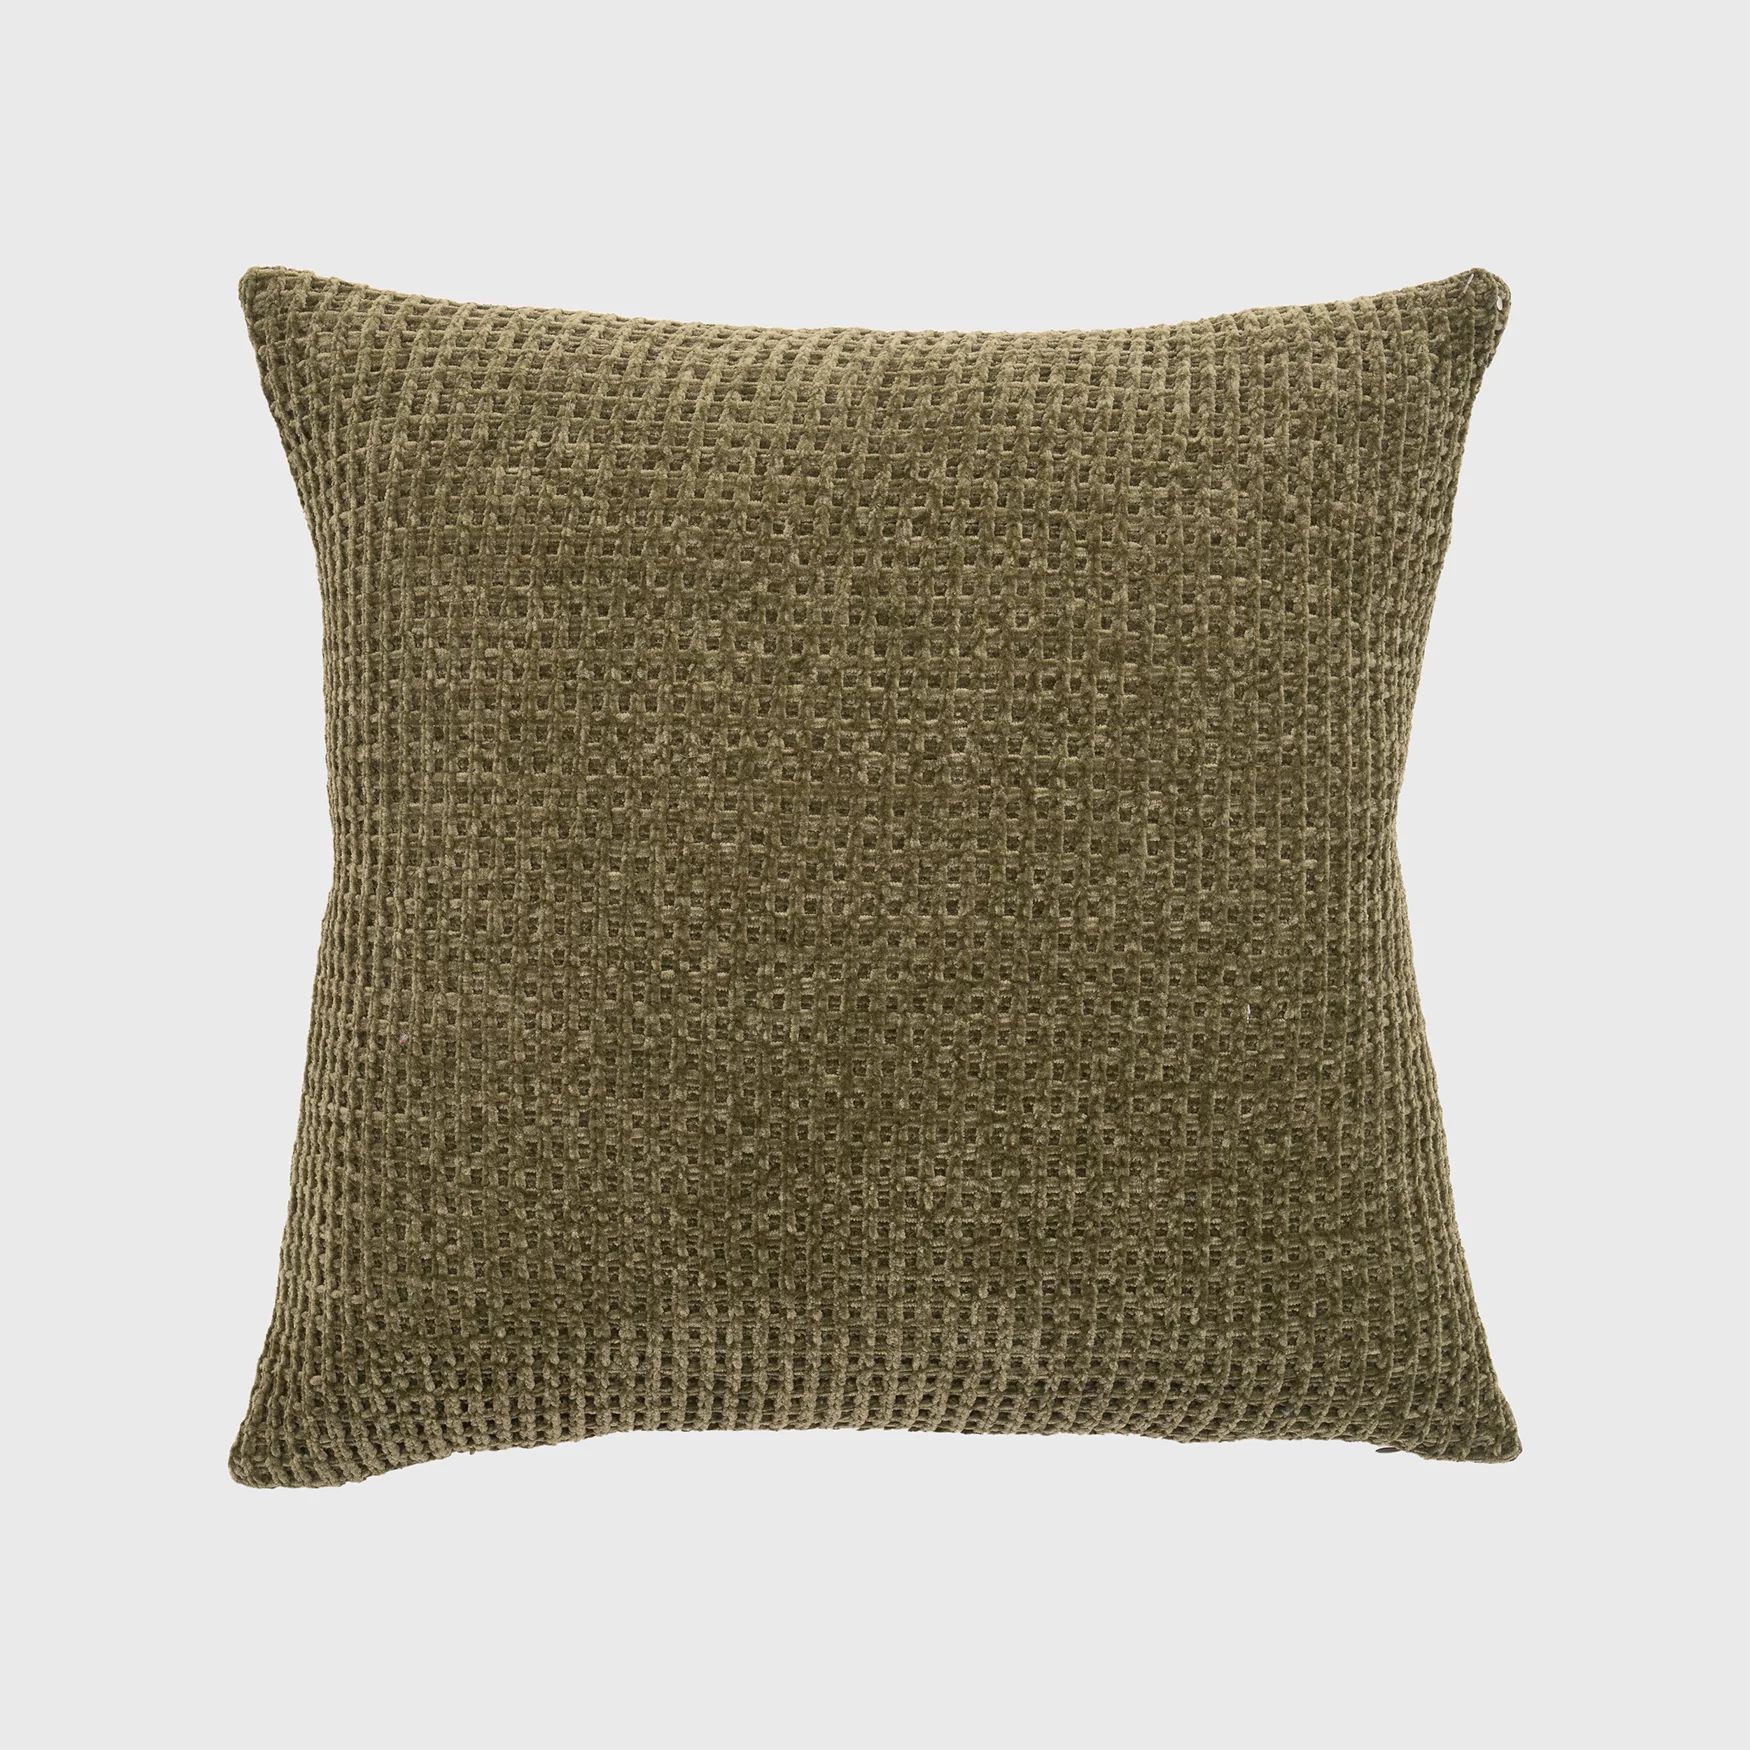 Evergrace Amor Chenille Knit Assent Pillow 20"x20",Winter Moss Green,1 Pack | Walmart (US)